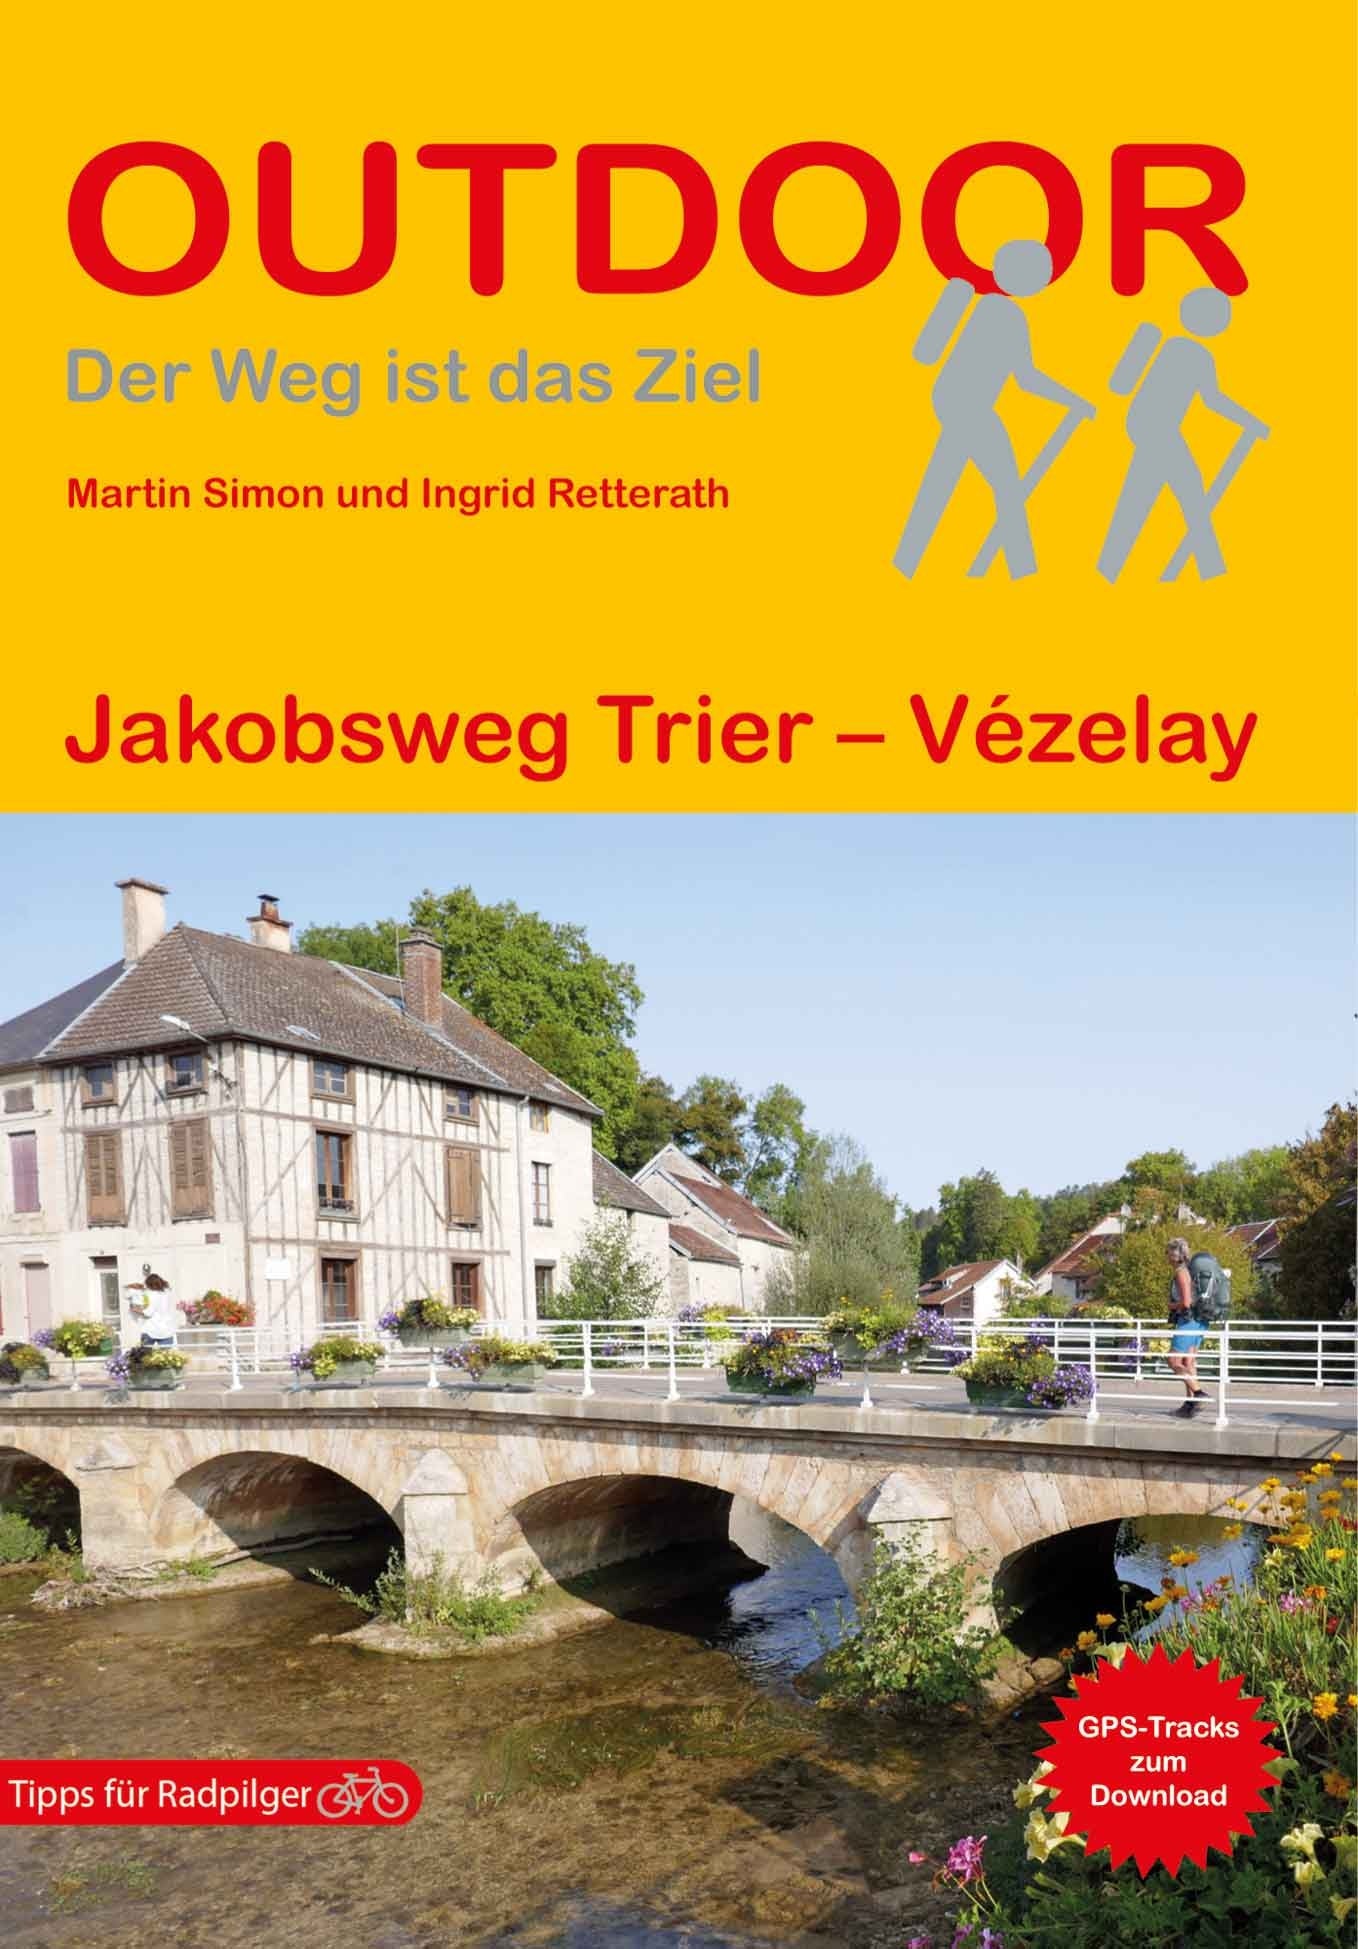 Germany/France: Jakobsweg von Trier - Vezalay (194)